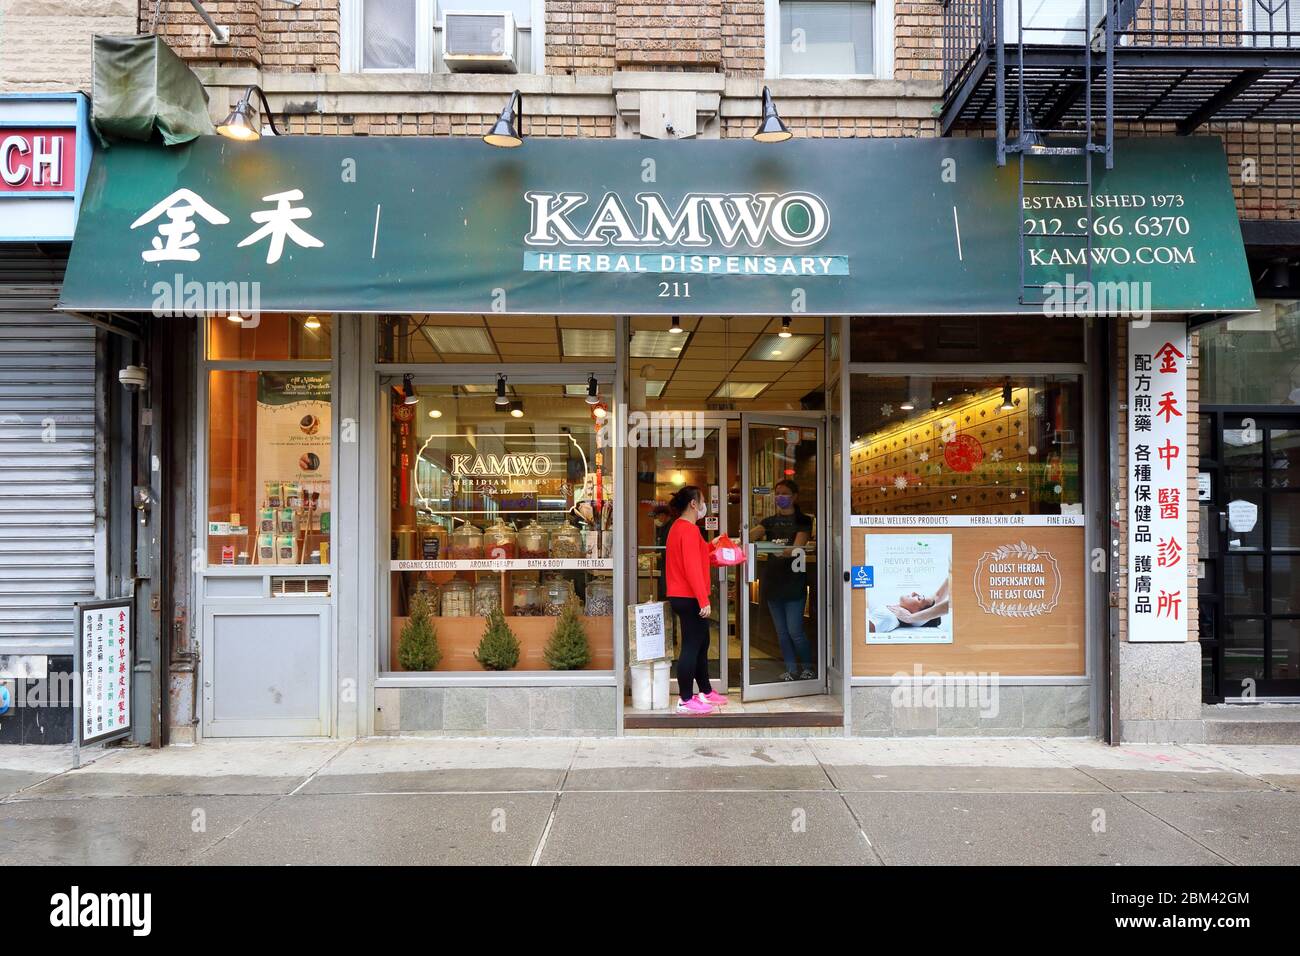 Eine Person holt Kräutermedizin von Kamwo in New York Chinatown ab, die wegen des Coronavirus für den Abholservice geöffnet ist... WEITERE INFORMATIONEN FINDEN SIE UNTER „VOLLSTÄNDIGE BILDUNTERSCHRIFT“ Stockfoto